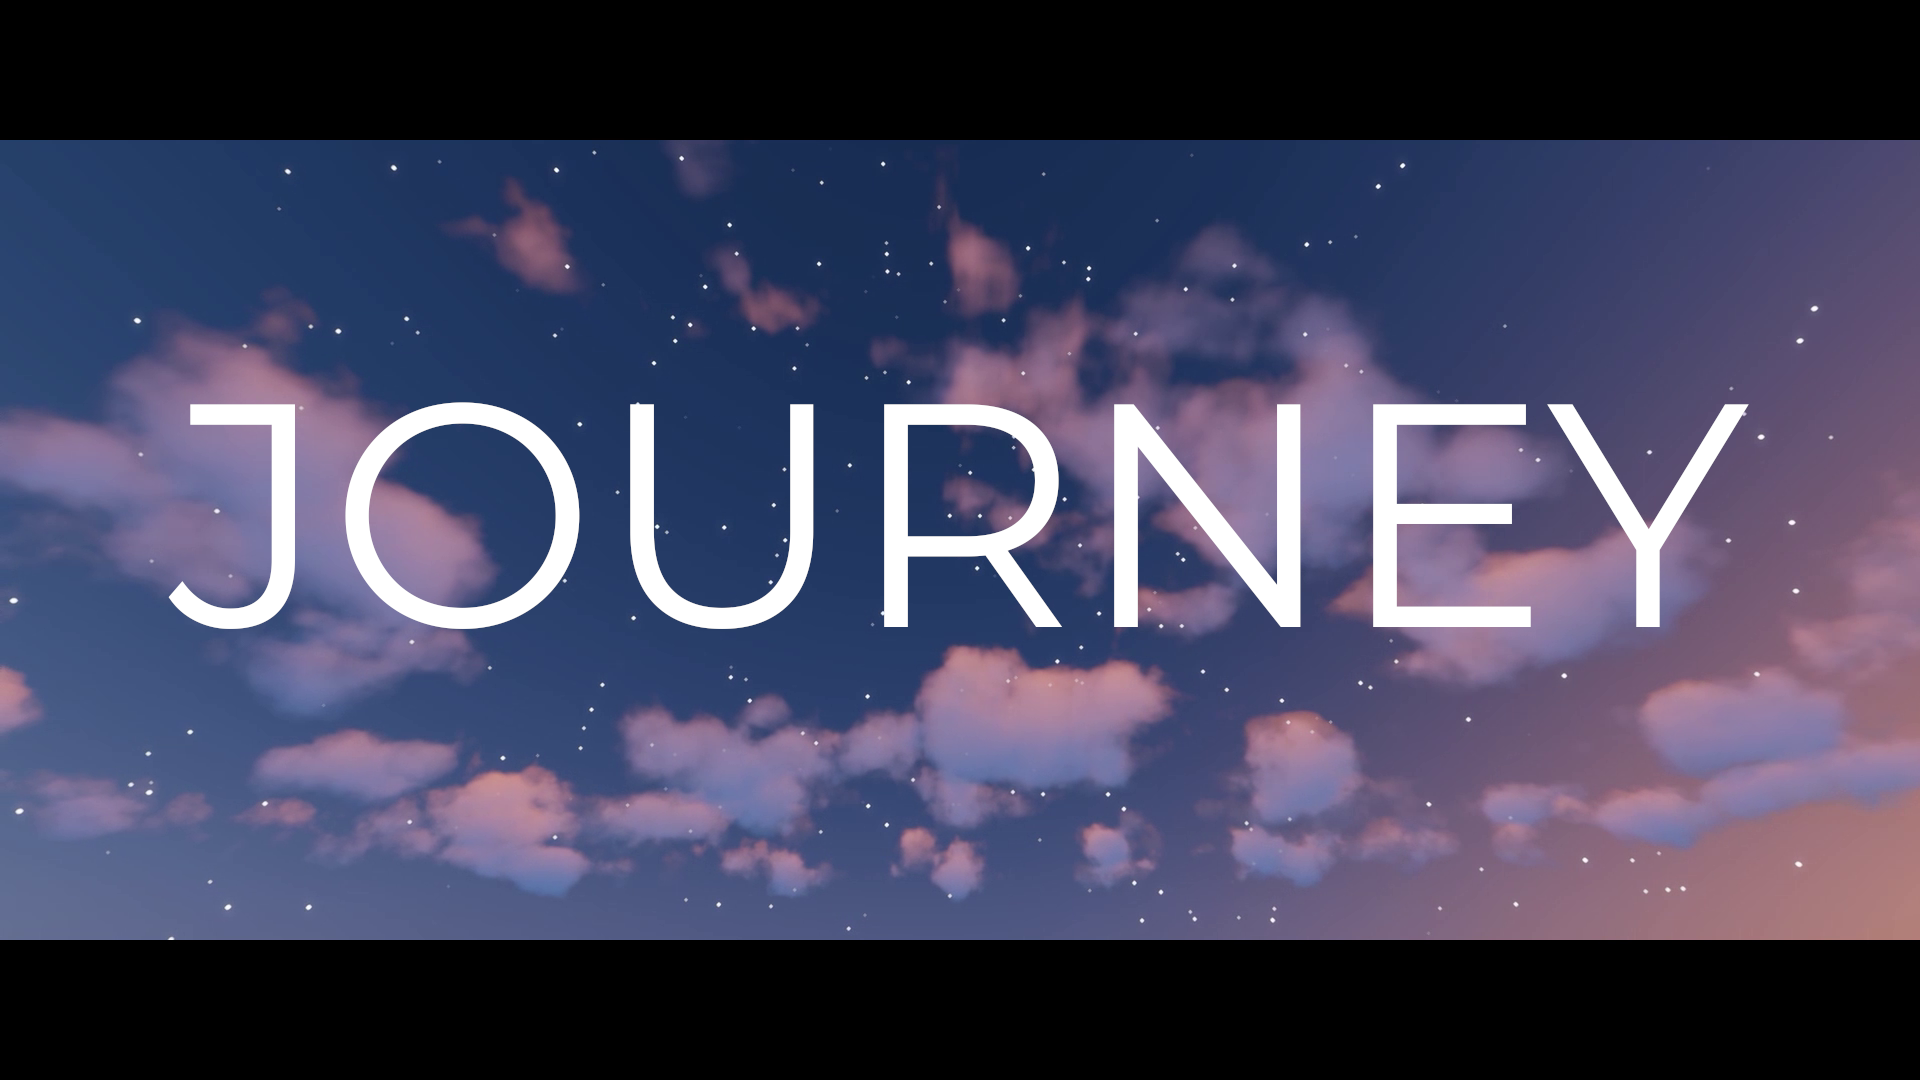 İndir Journey 1.02 için Minecraft 1.17.1